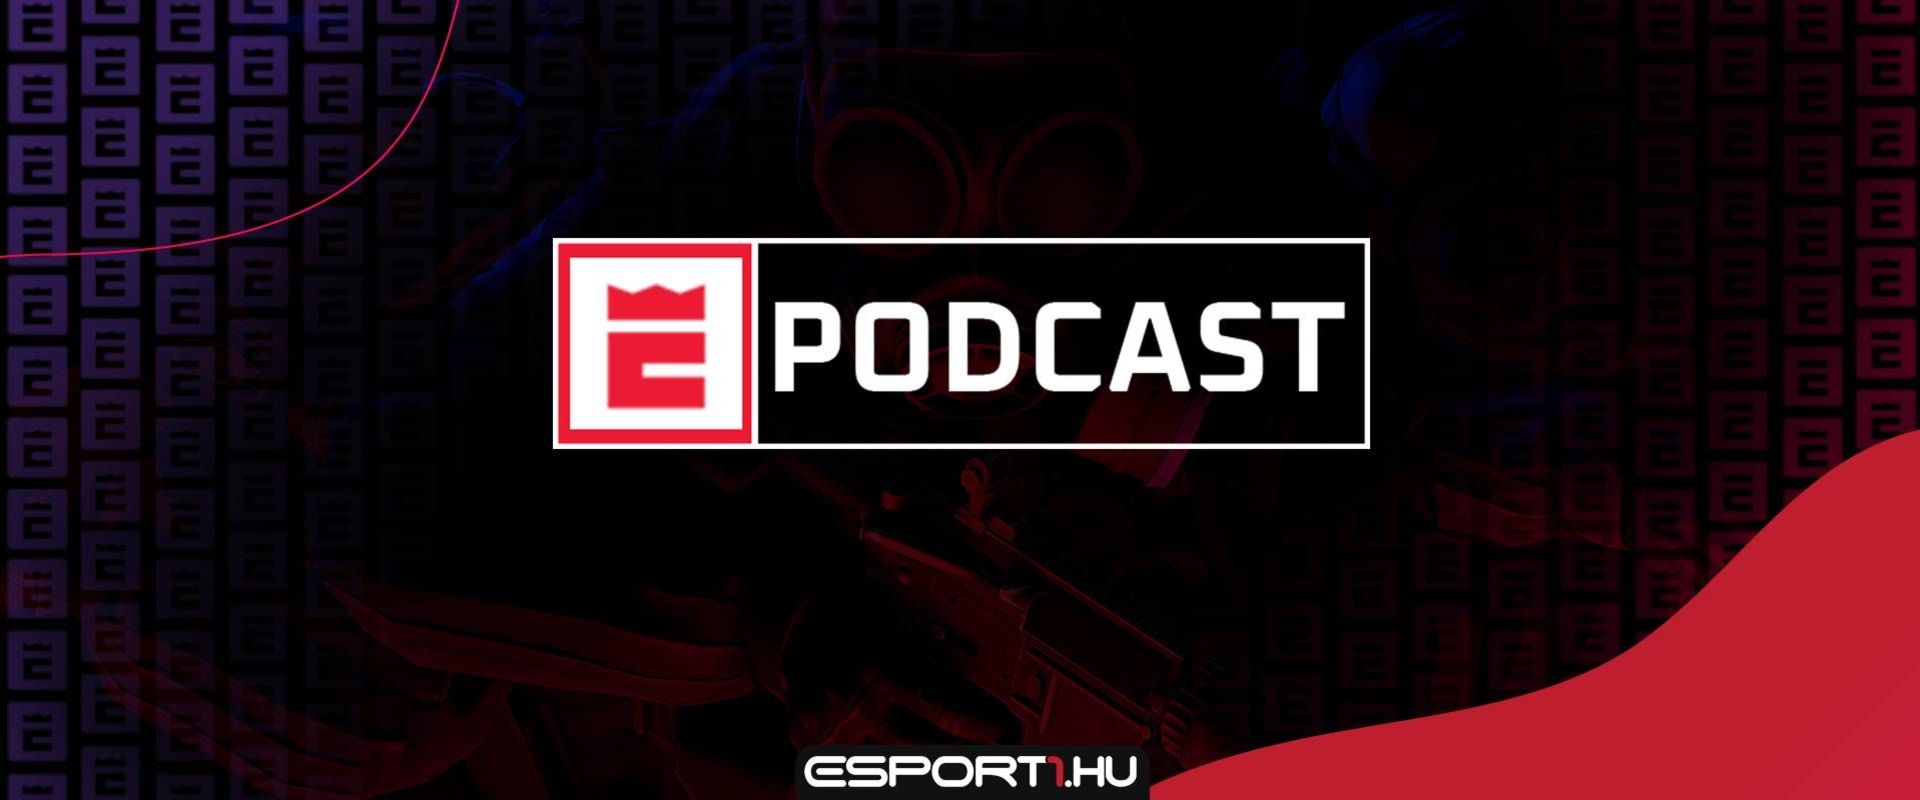 Ismerjétek meg az EsportGuru heti, e-sportra fókuszáló podcast műsorát